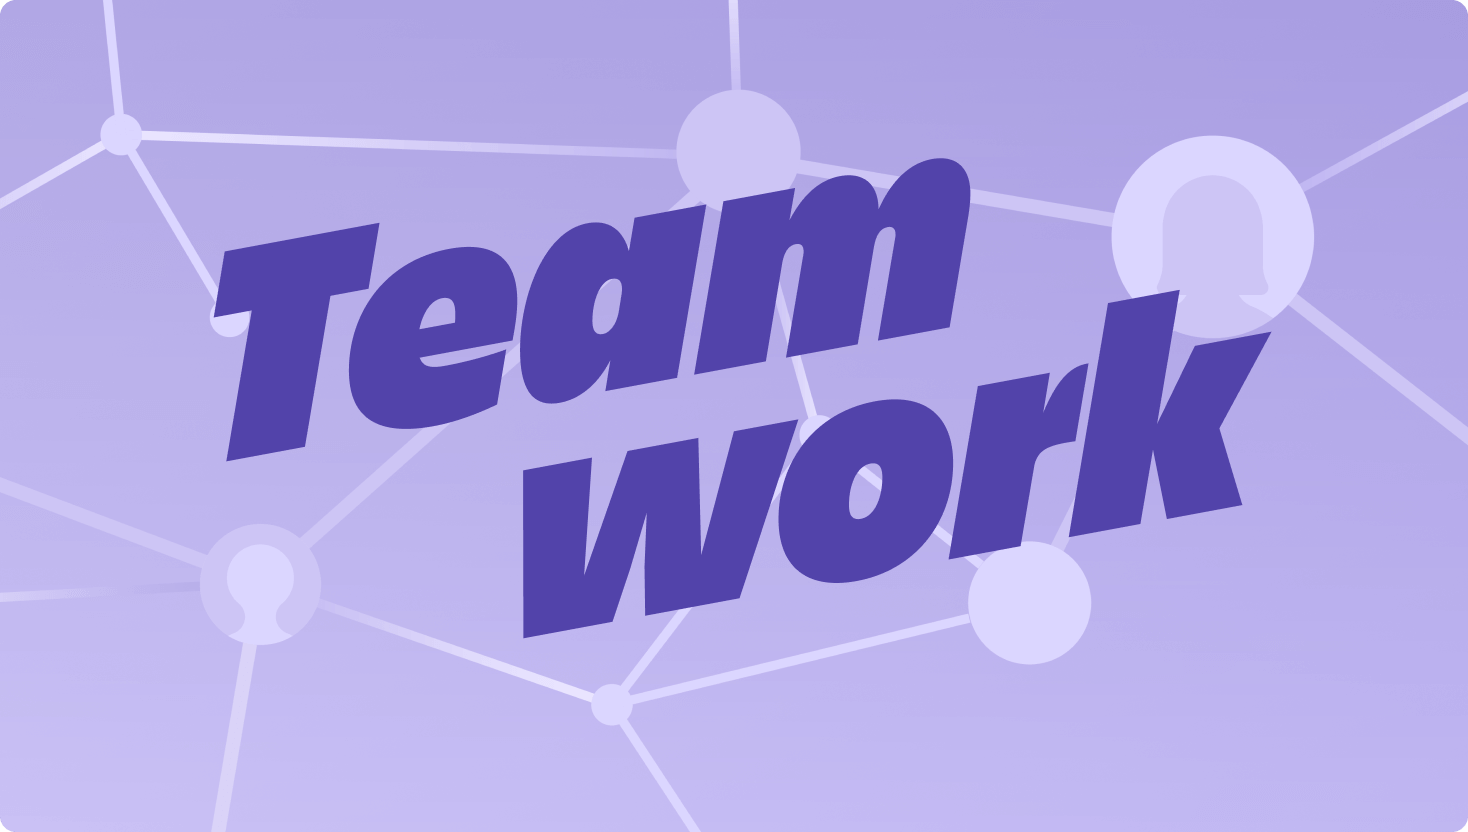 Fioletowy obraz przedstawiający węzły łączące się w sieci z wyróżniającym się napisem „Teamwork”